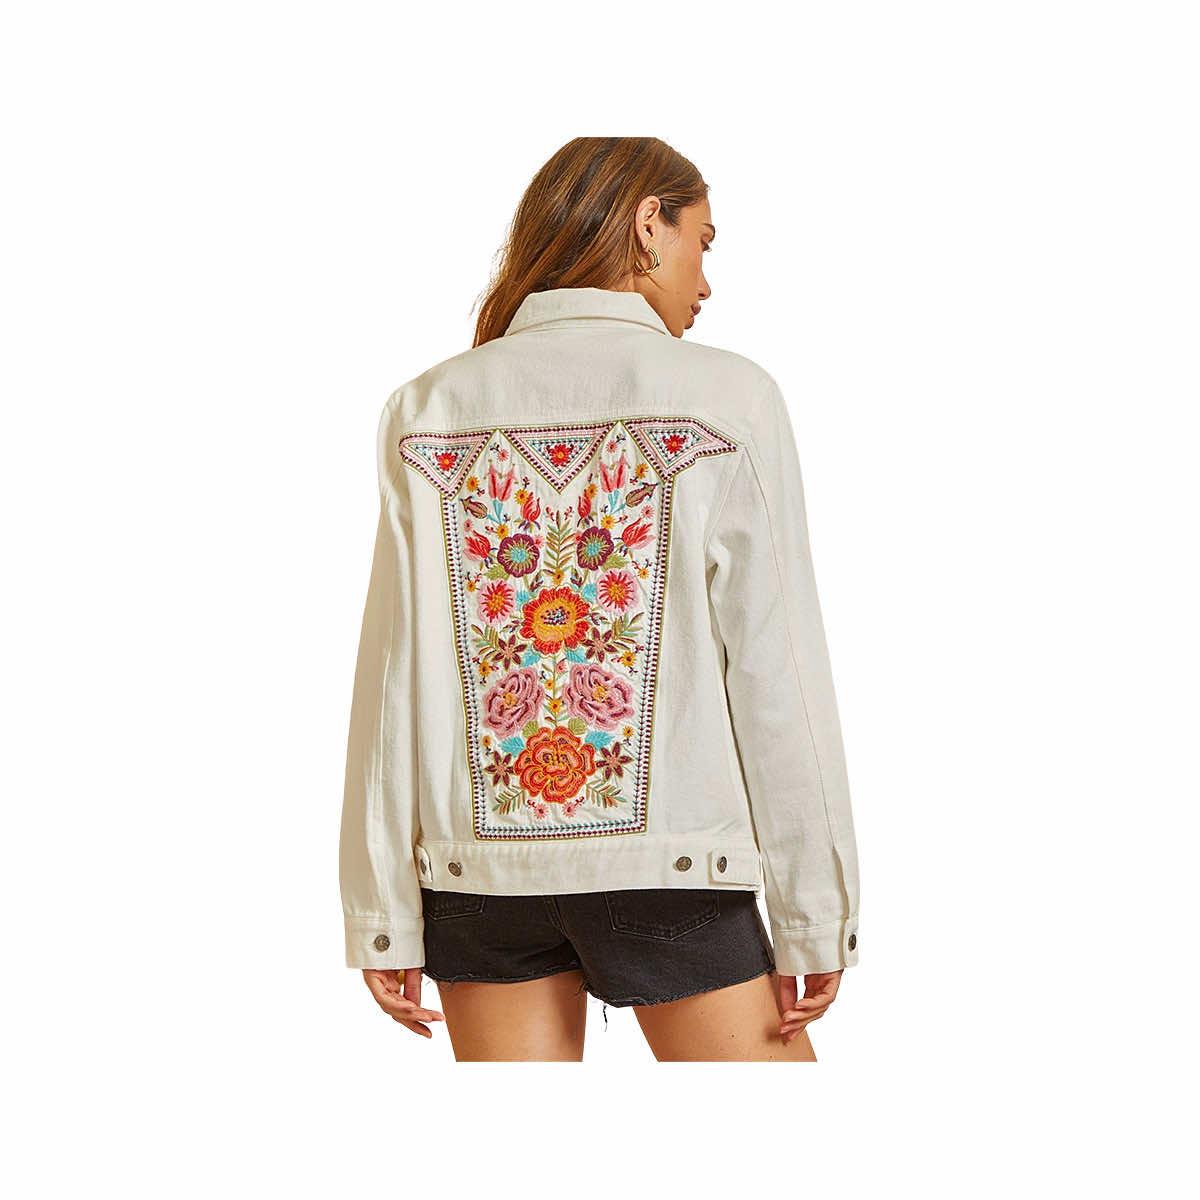  Women's Light Wash Embroidered Denim Jacket - Curvy